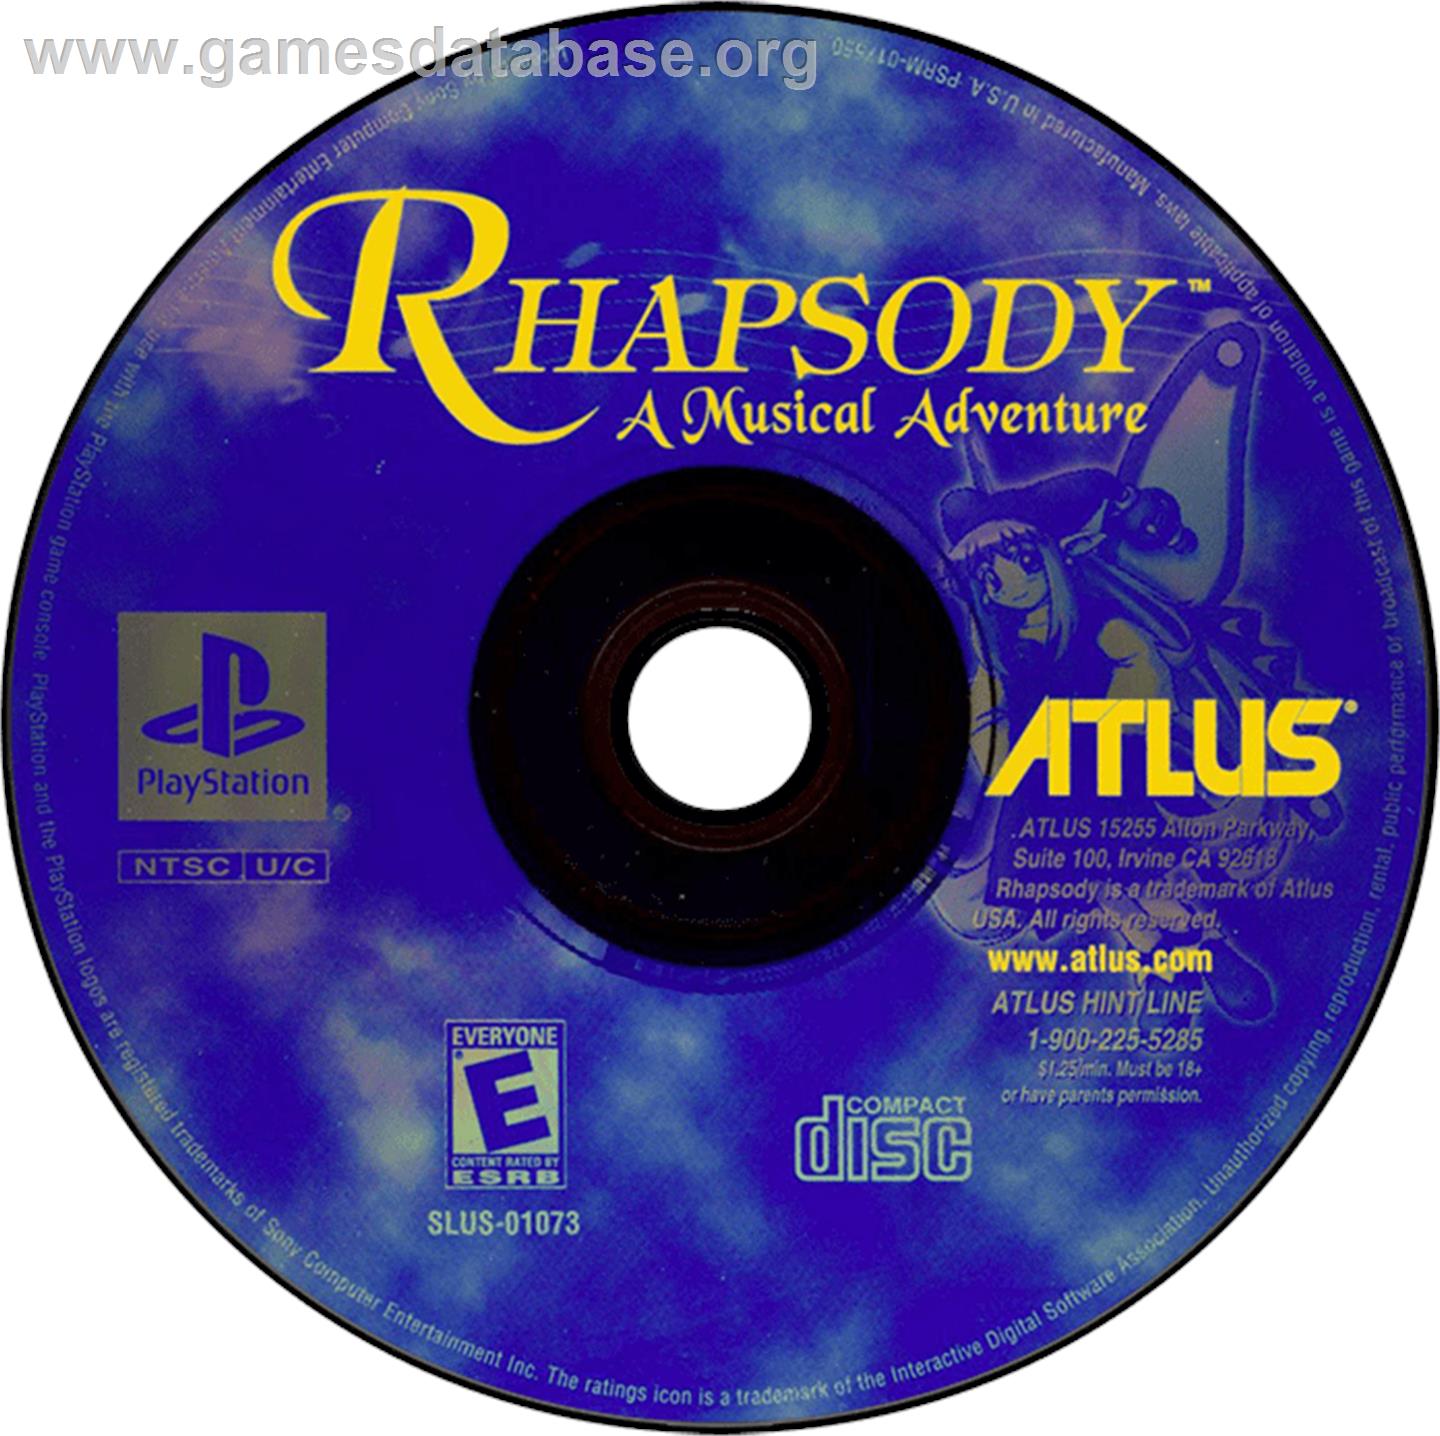 Rhapsody: A Musical Adventure - Sony Playstation - Artwork - Disc